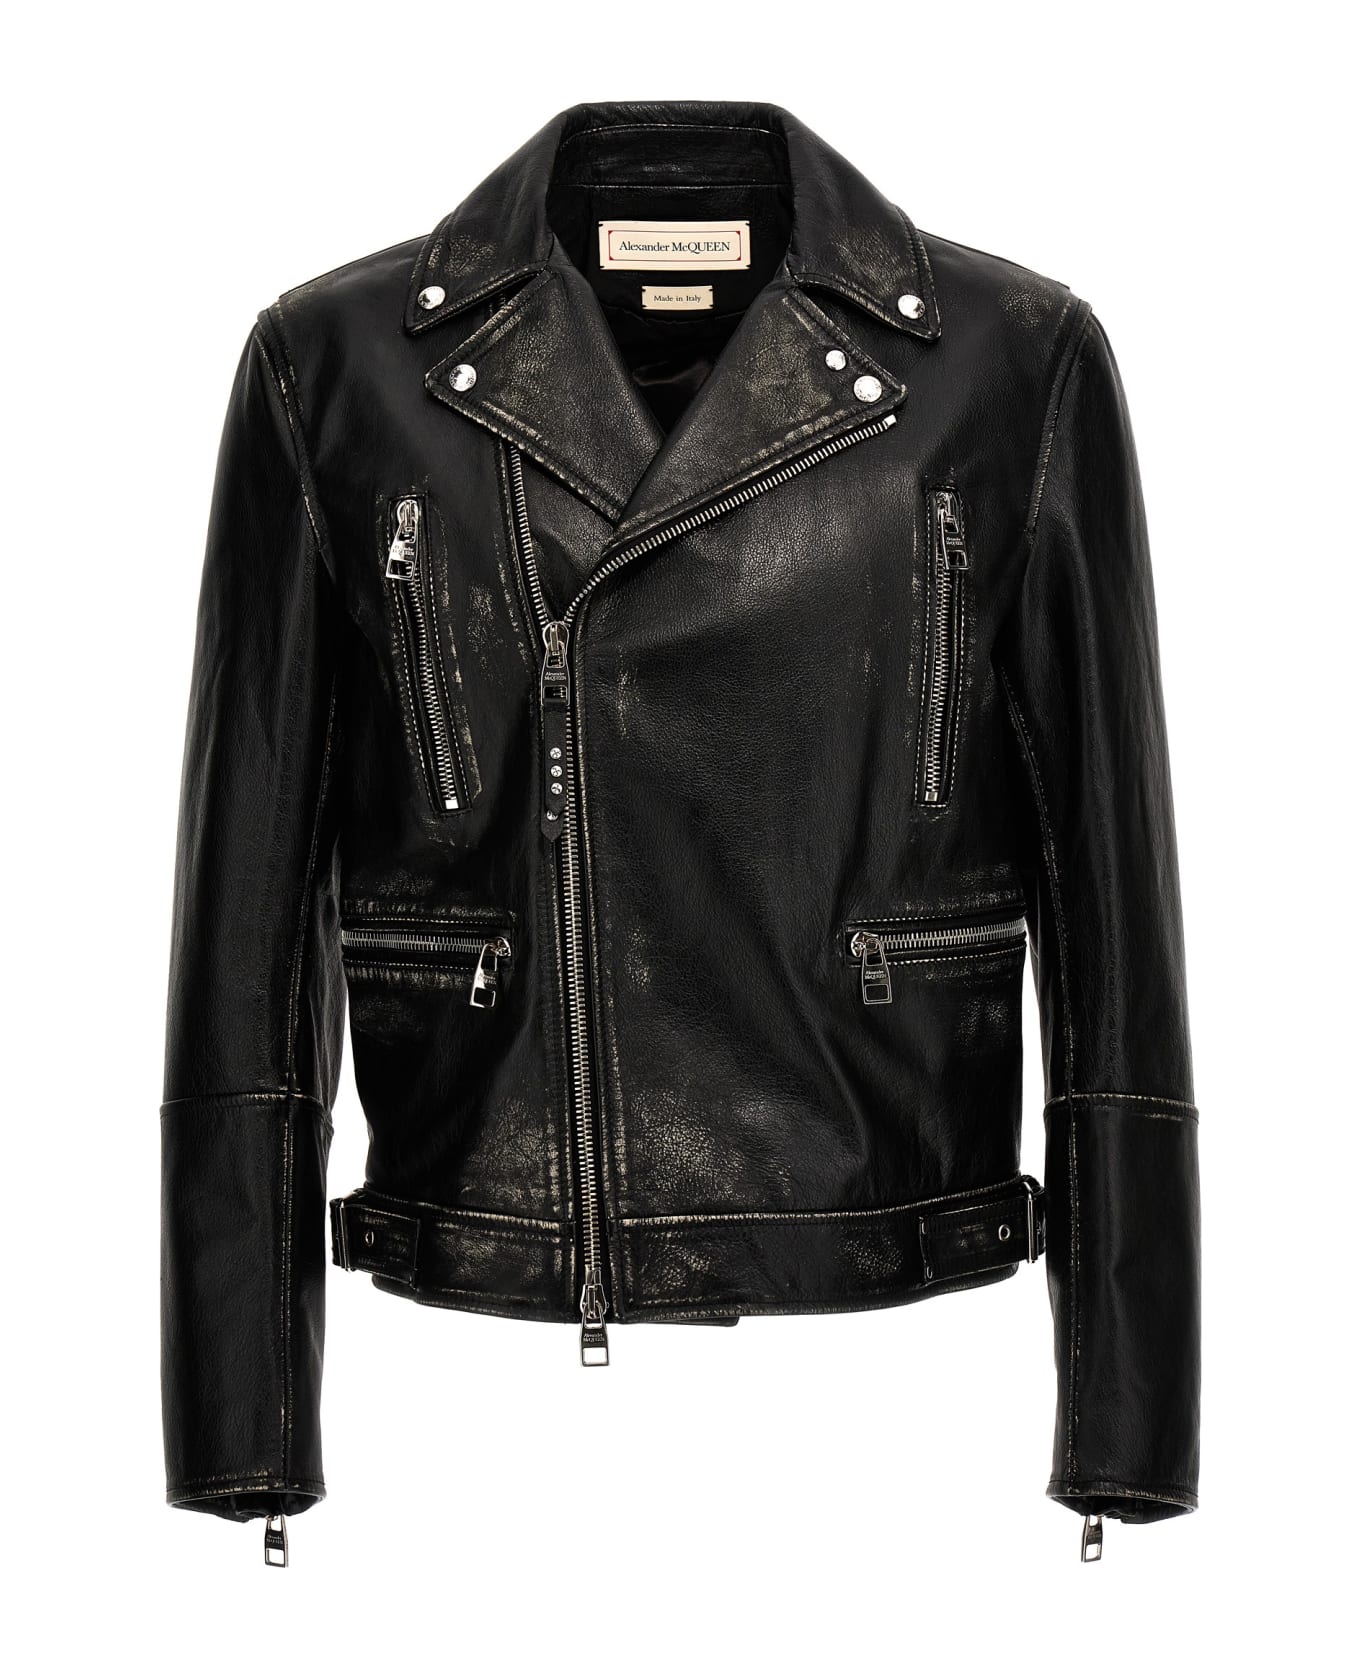 Alexander McQueen Biker Jacket - Black レザージャケット